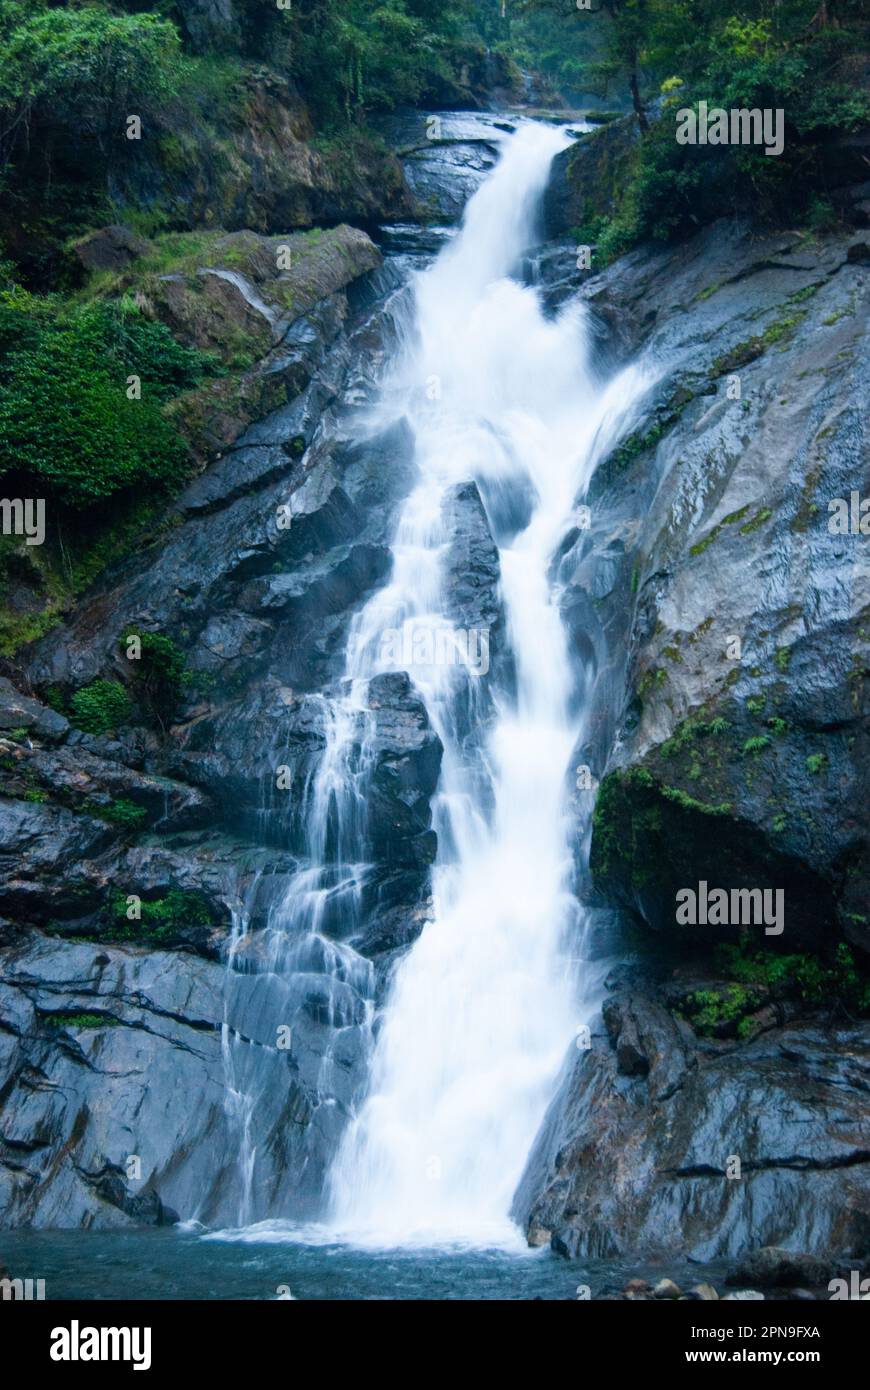 Siruvani waterfalls Coimbatore Western Ghats Stock Photo